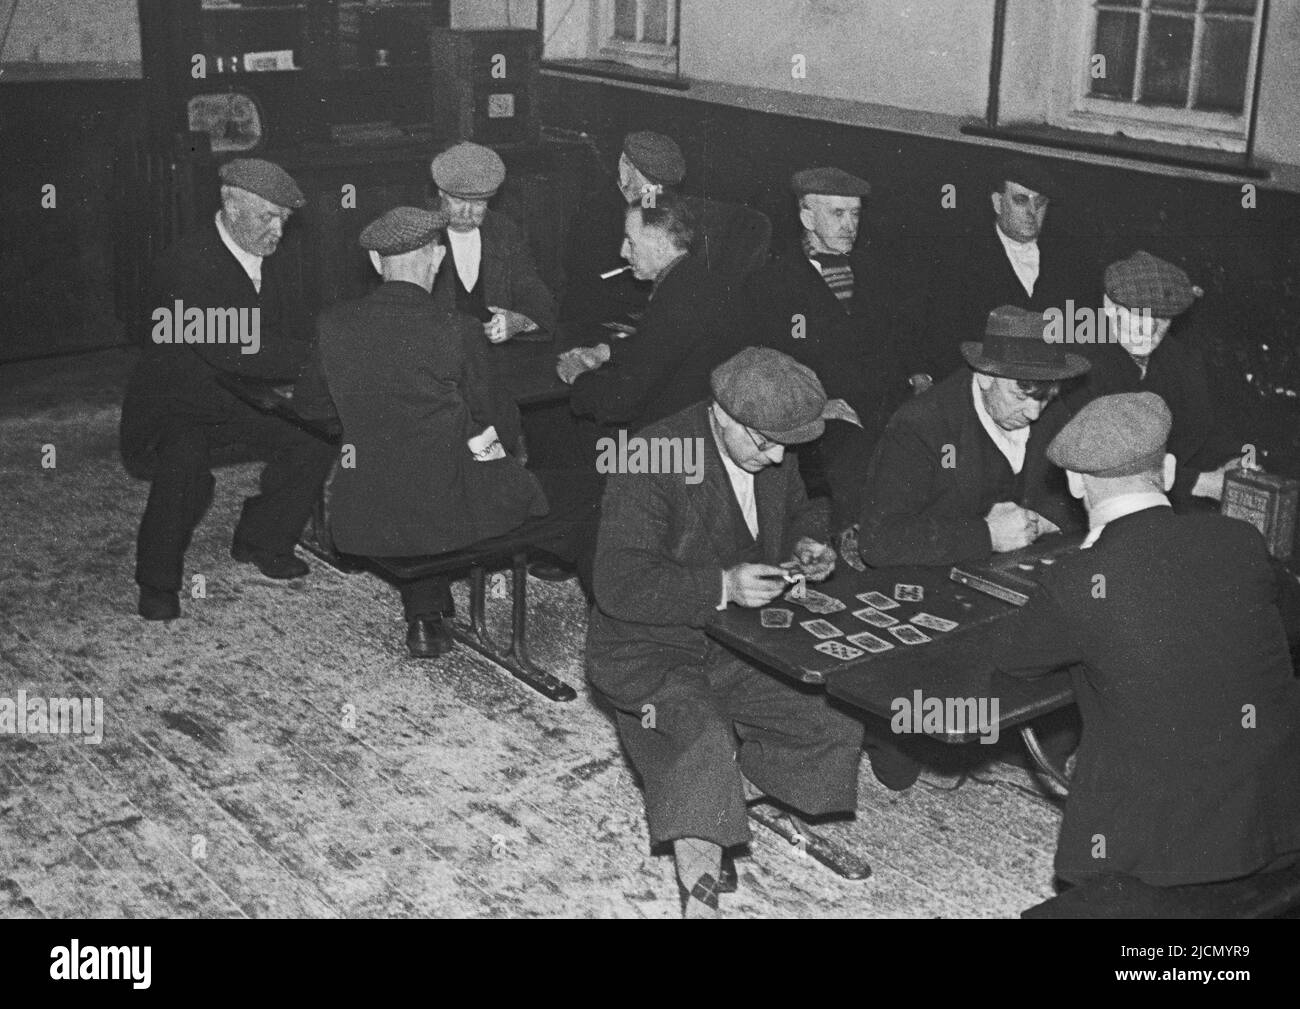 1940s, historique, groupe de chômeurs gallois de la mine jouant le CRIB dans la salle du village de l'exploitation minière de charbon du village de Trefahod, au sud du pays de Galles, au Royaume-Uni. Banque D'Images